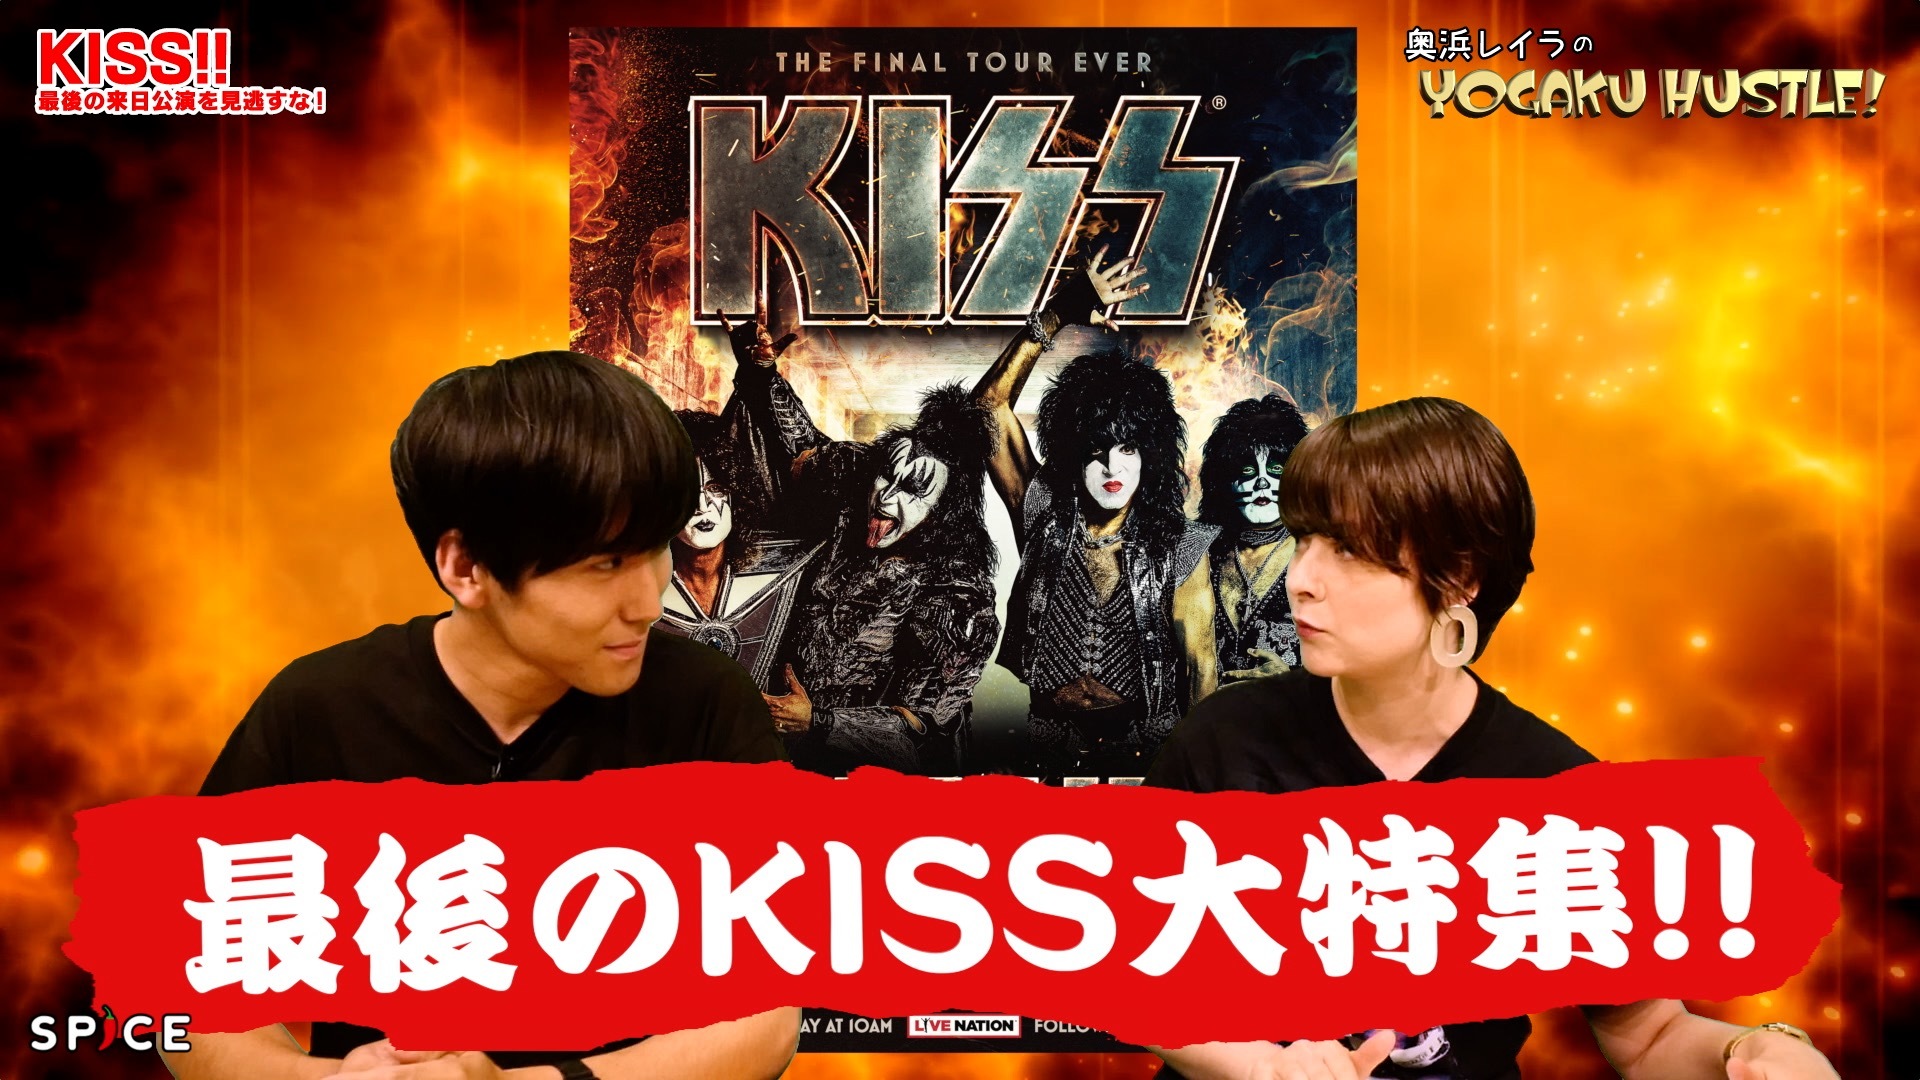 地獄の軍団KISS最後の日本ツアー!?【奥浜レイラの洋楽ハッスル!#59